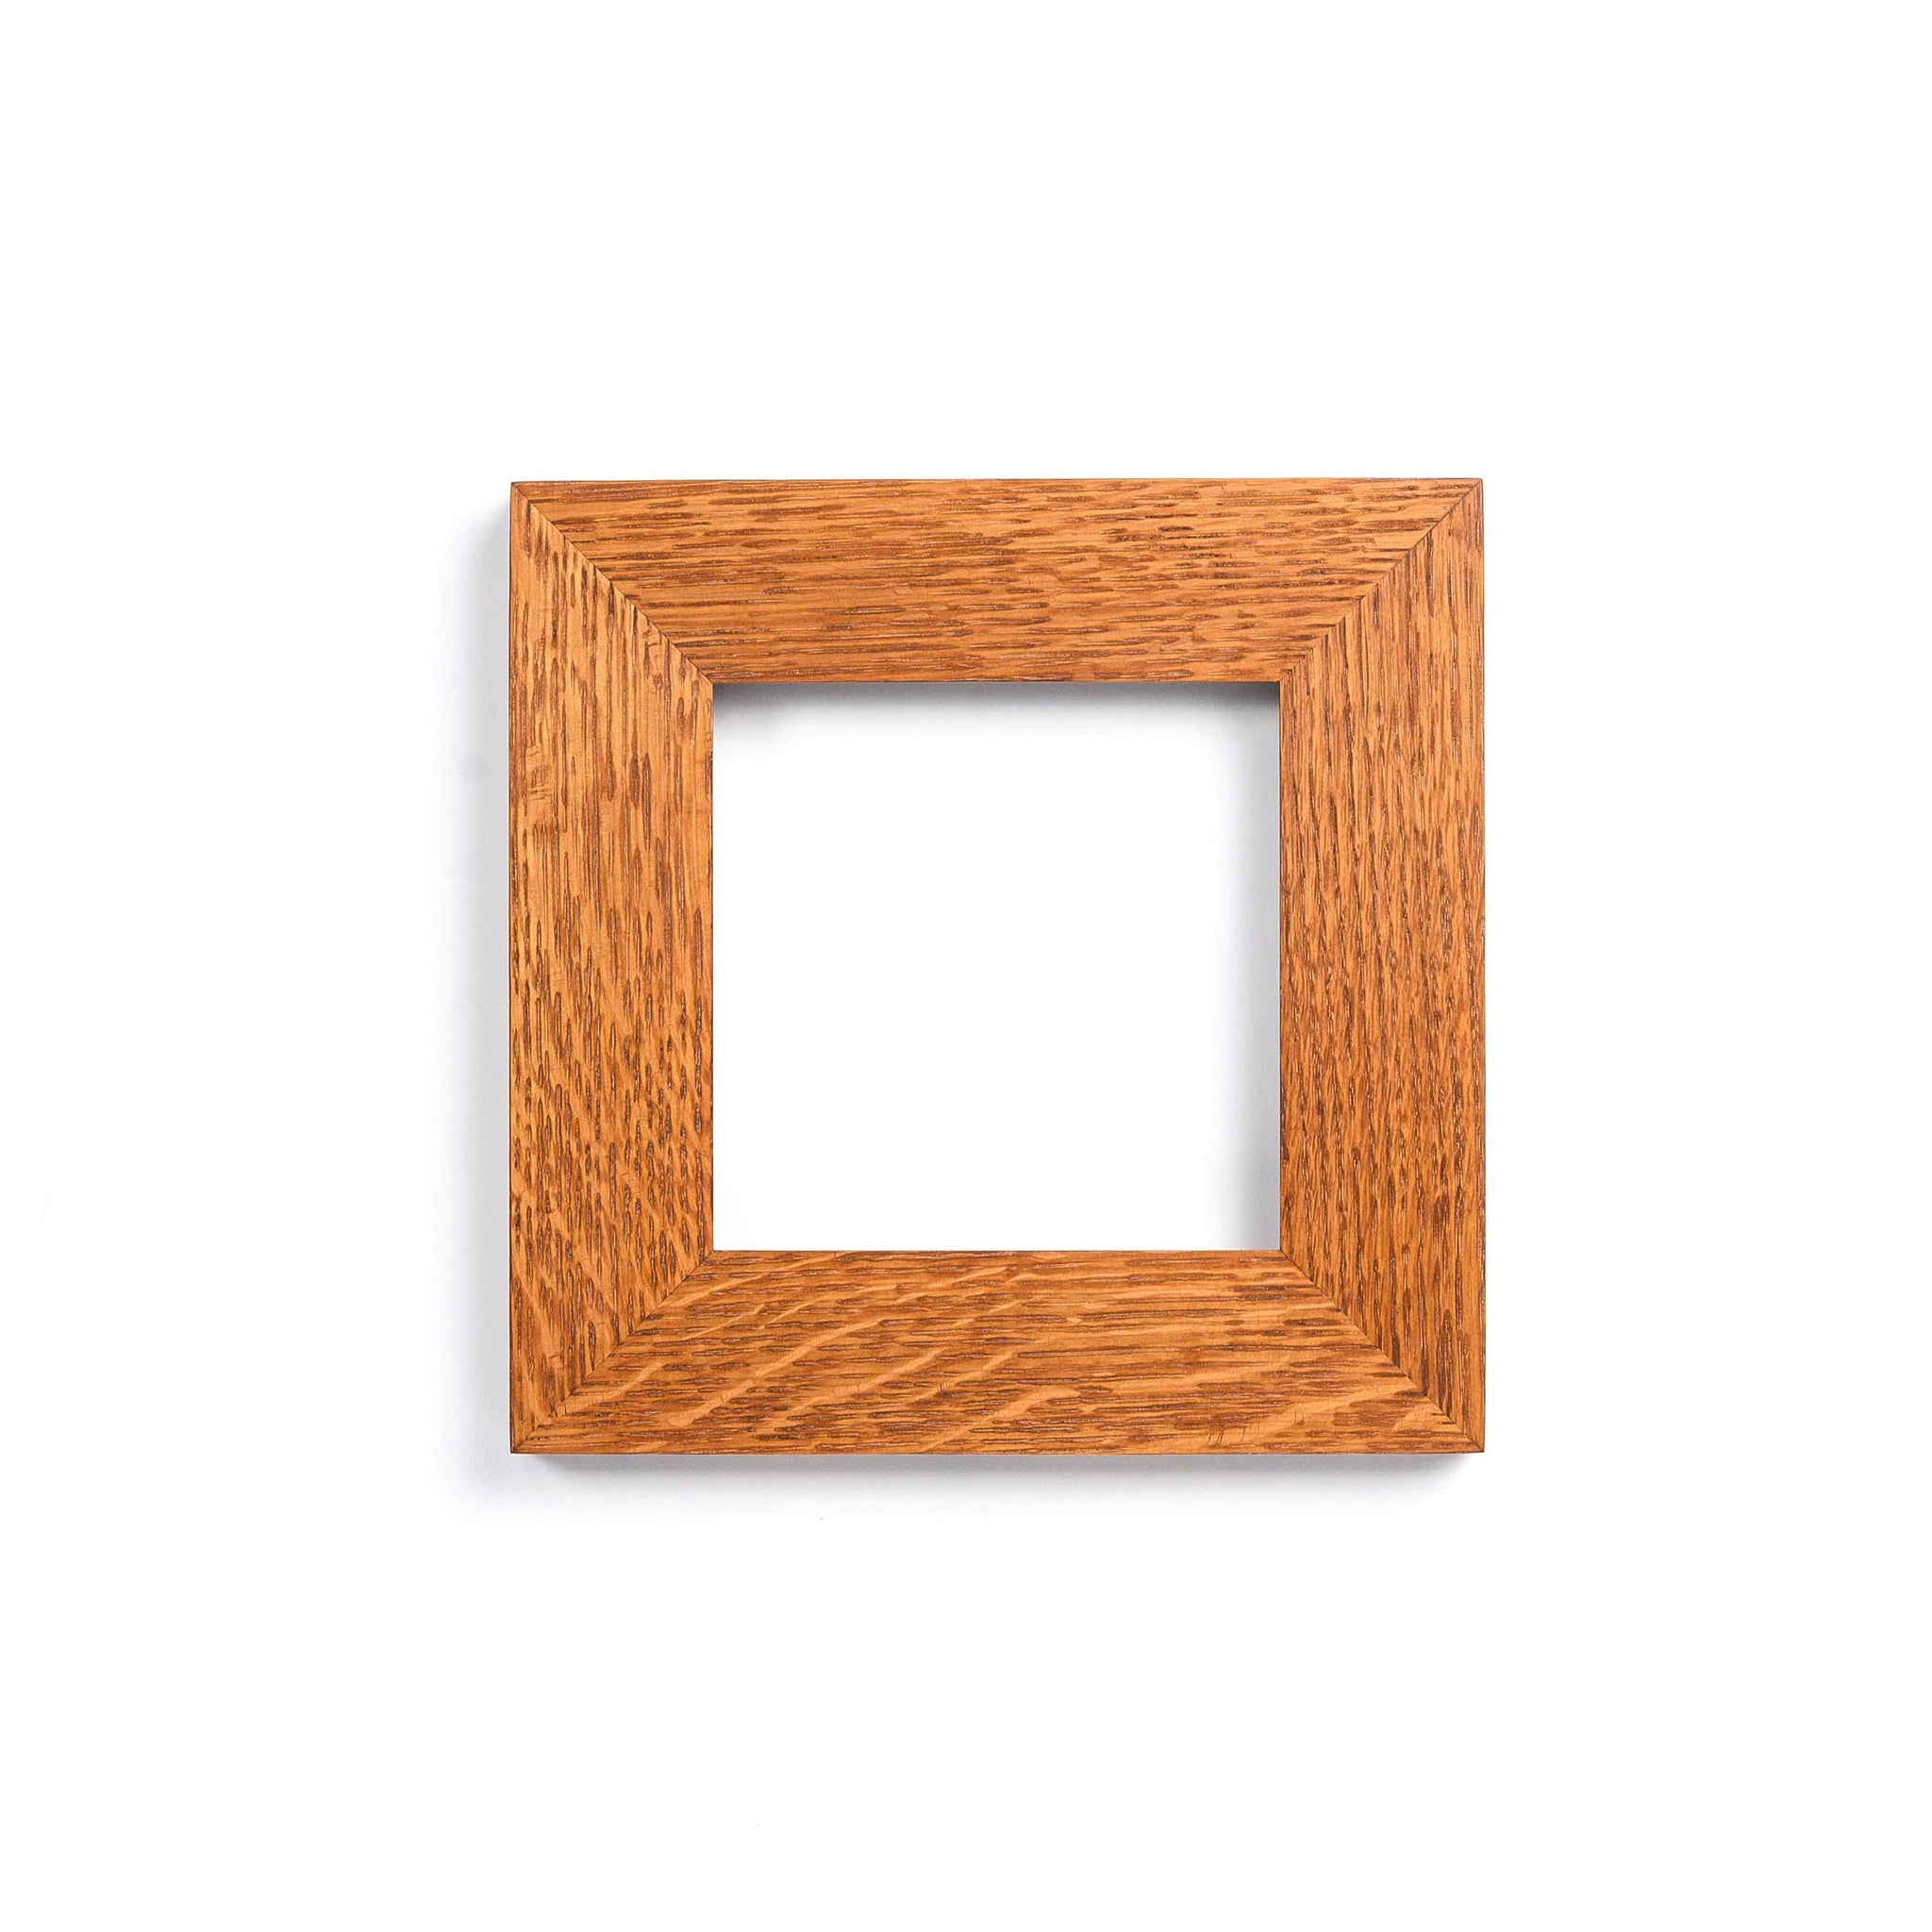 6x6 Tile Frame